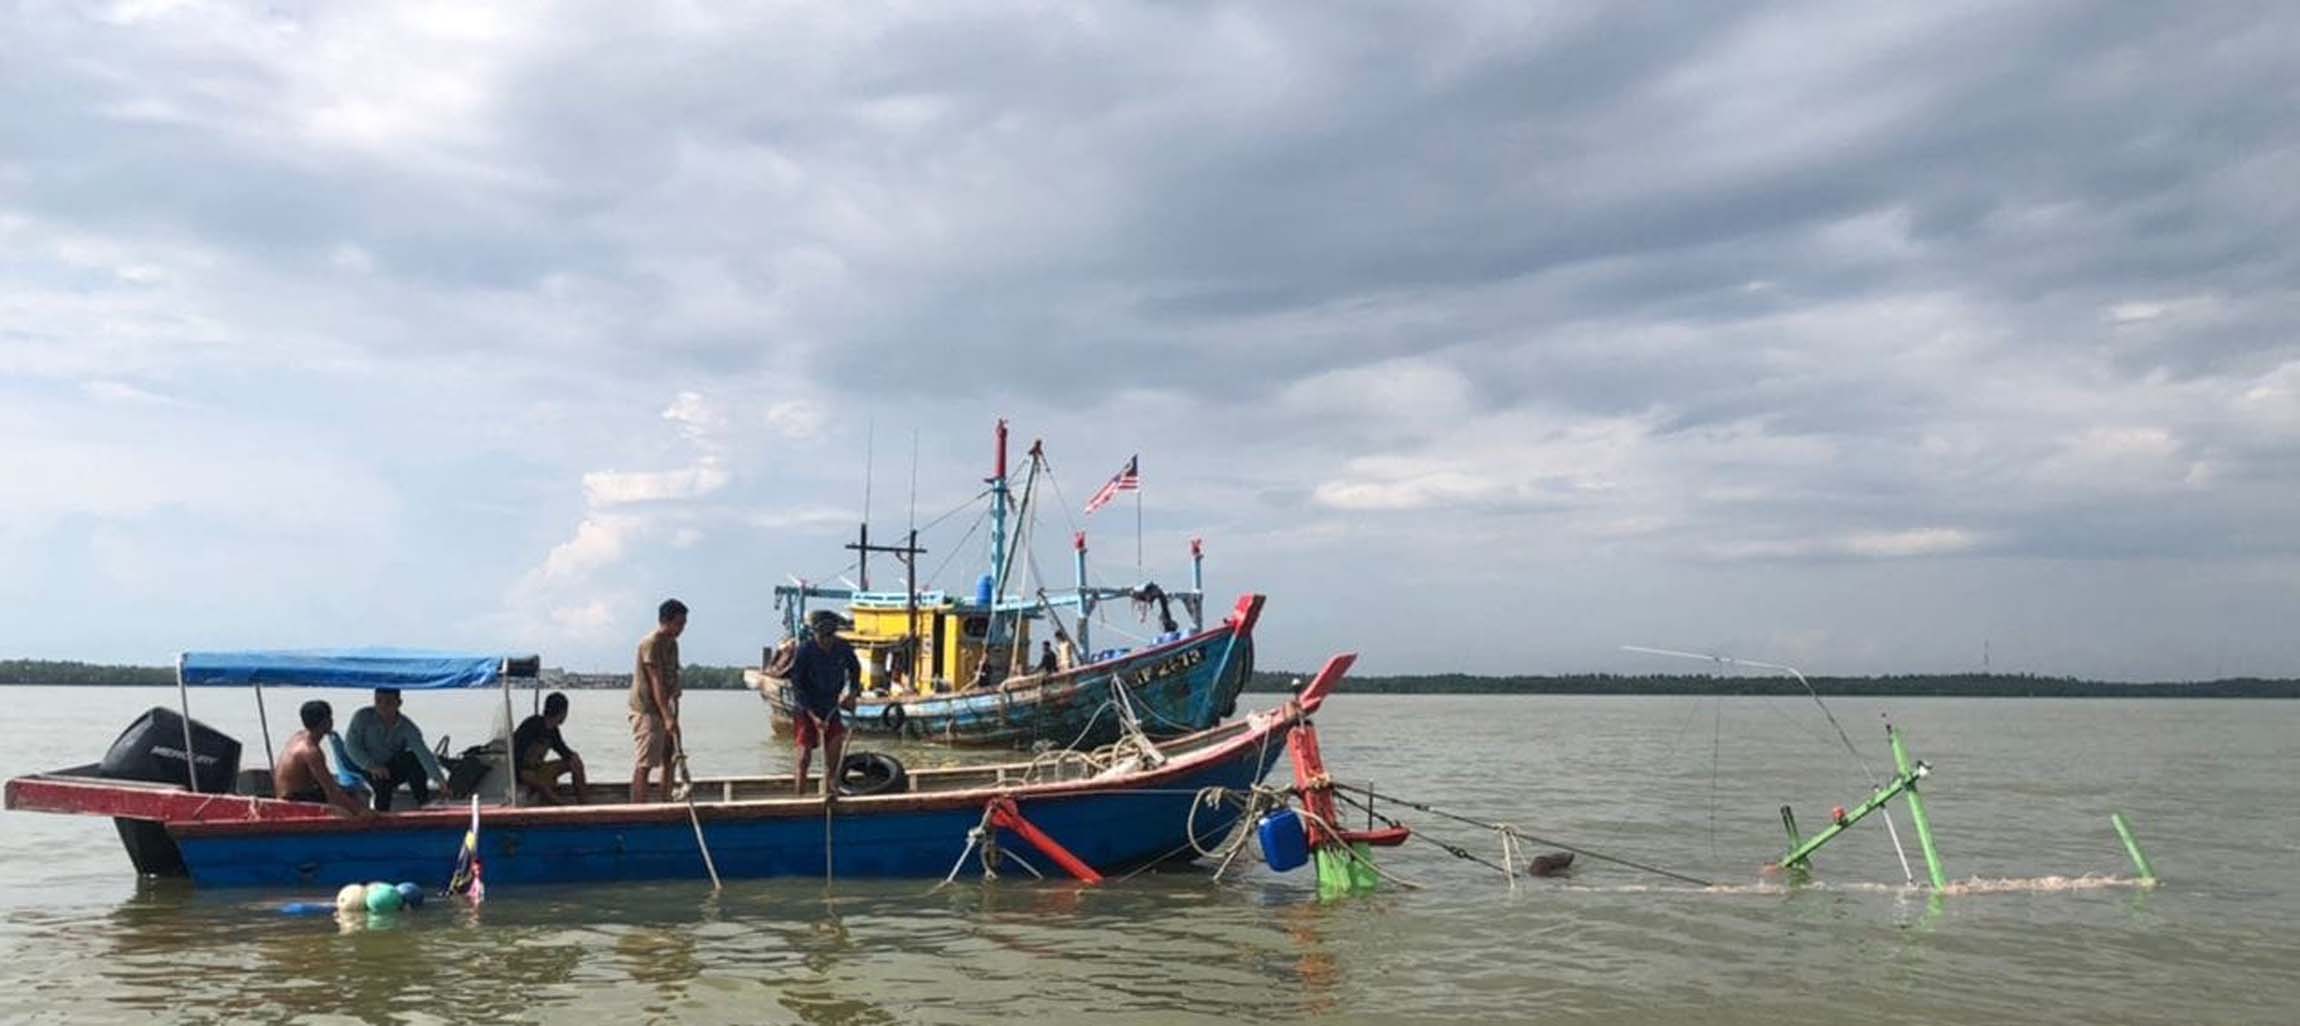 半港渔船沉没两人成功逃生 华裔渔夫尸体寻获 